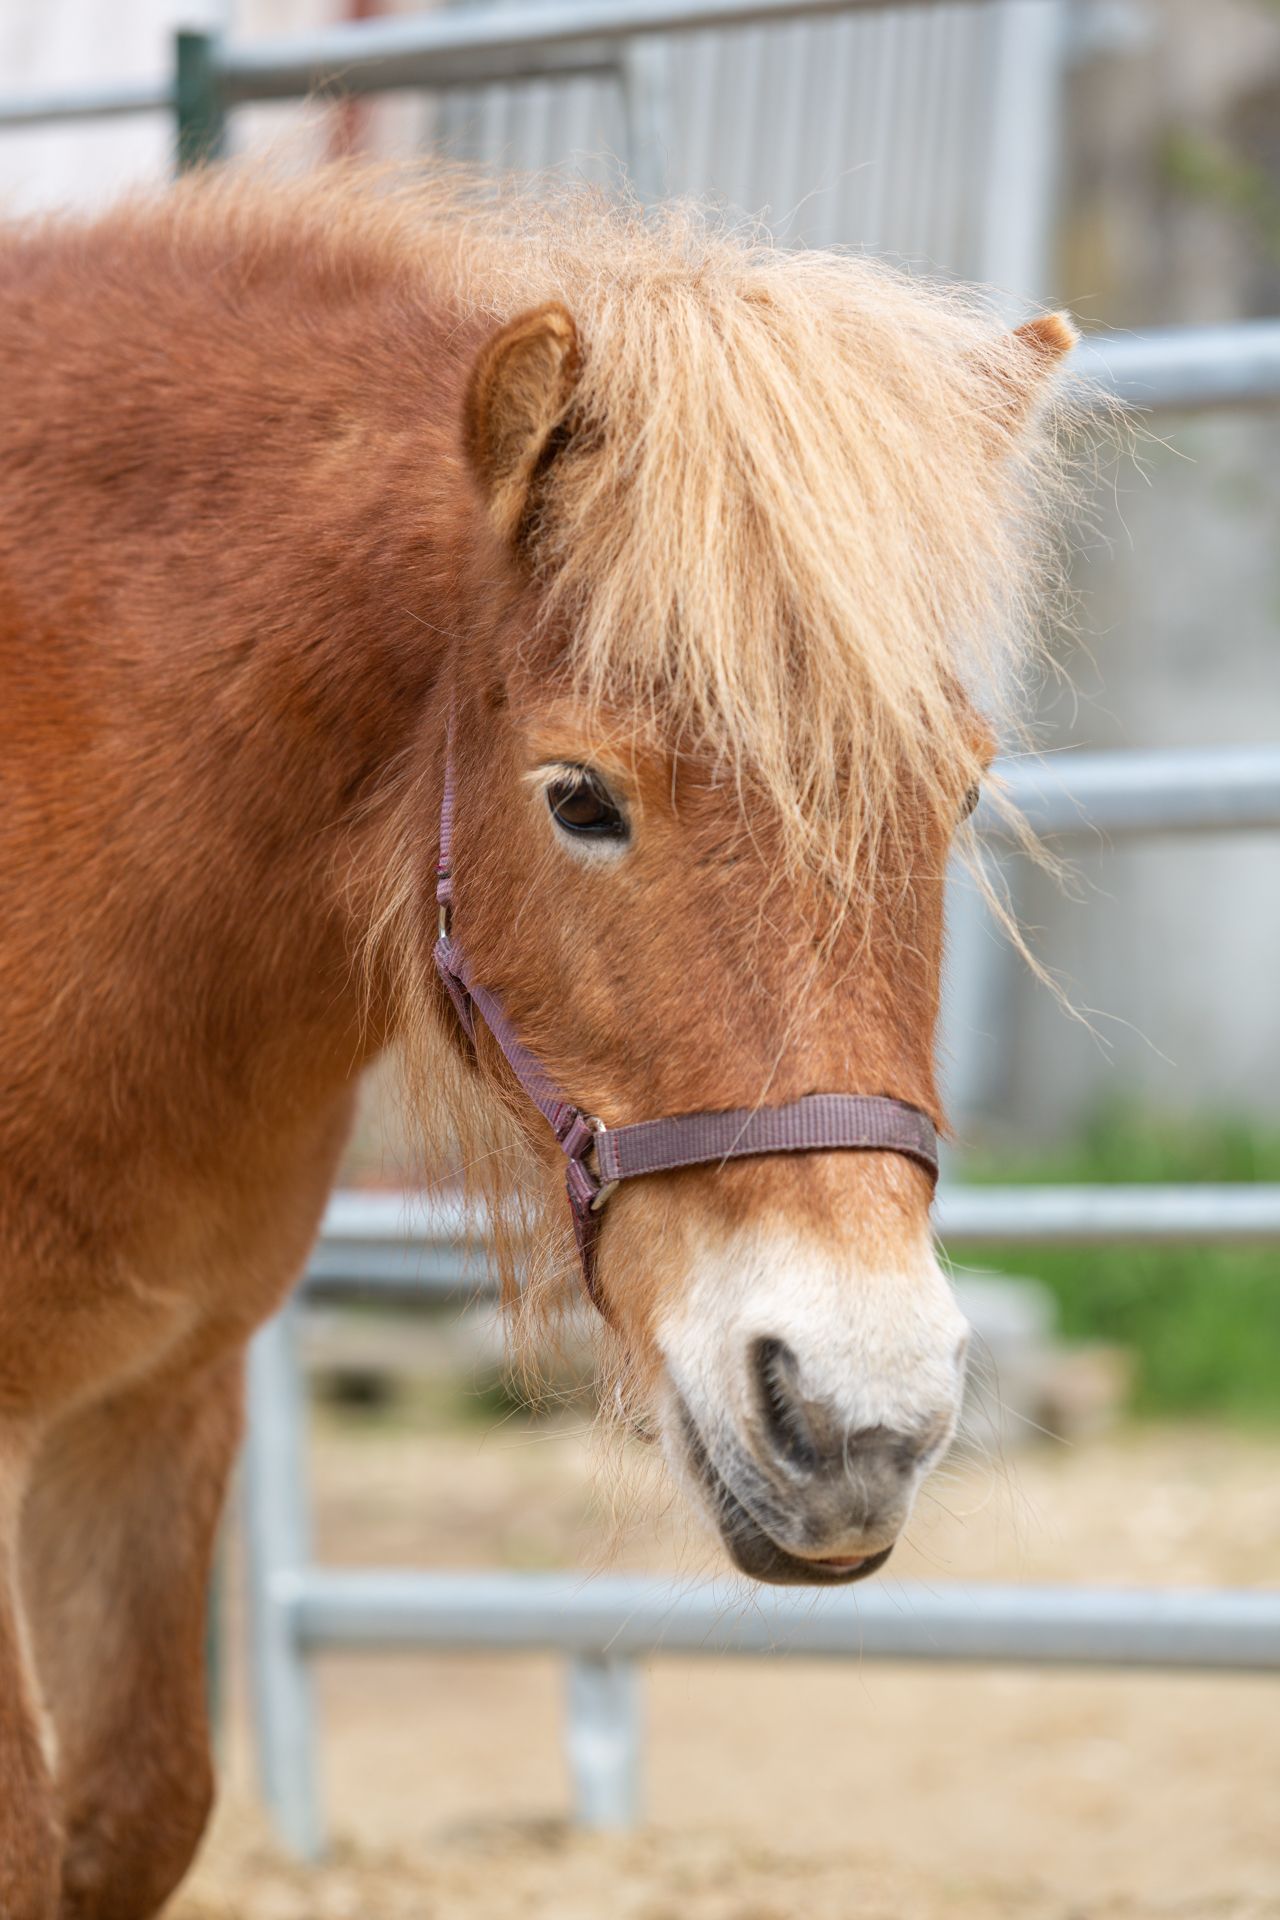 HerzPfade - Systemische Aufstellungsarbeit mit Pferden, zweites Therapiepferd blickt aufmerksam, symbolisiert Konzentration und Einsicht.